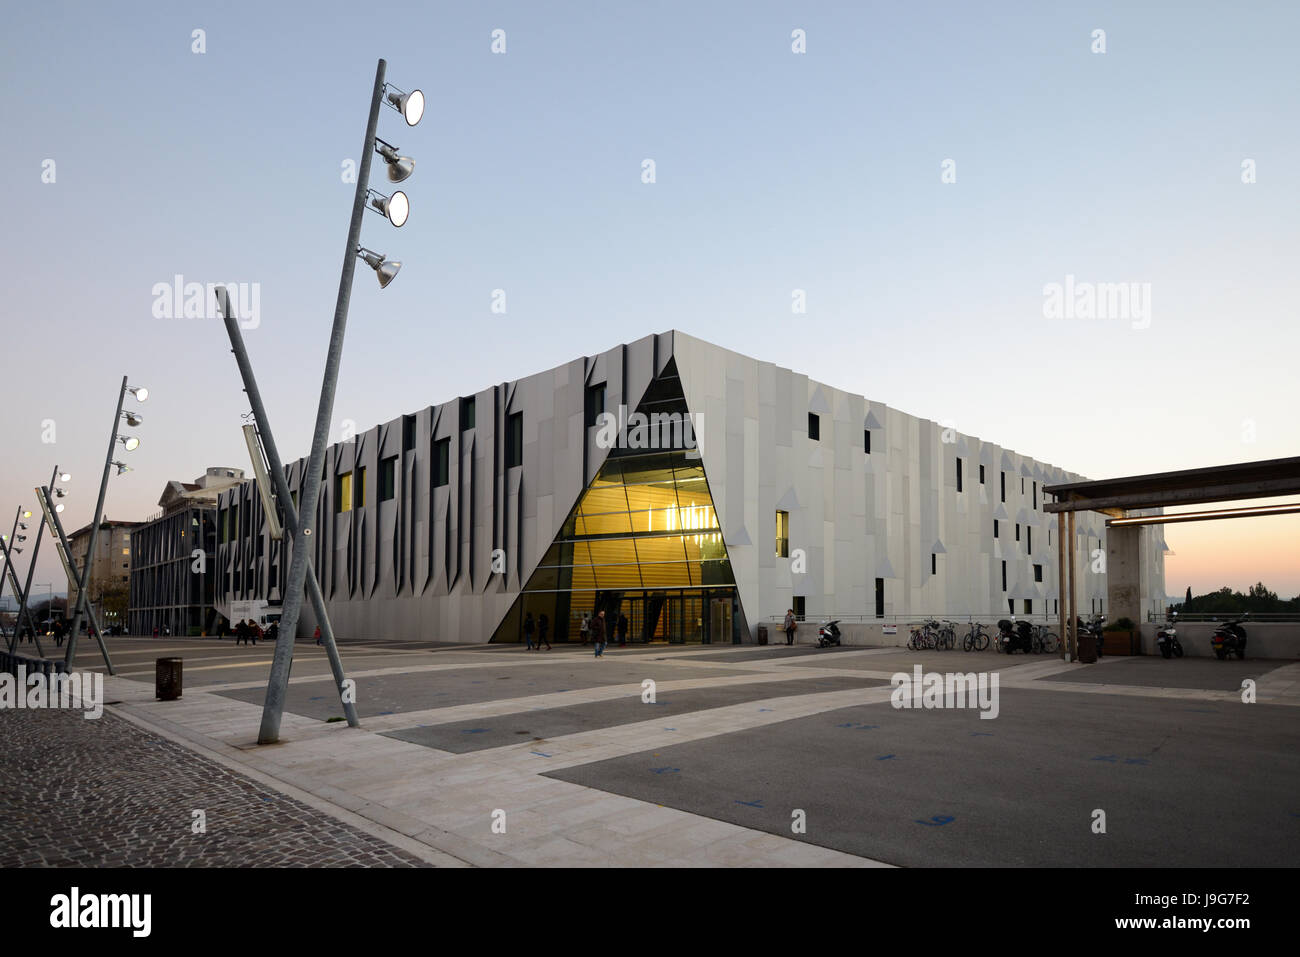 Conservatorio di musica o Conservatorio Darius Milhaud, costruito nel 2013, dall'architetto Kengo Kuma Aix-en-Provence Provence Francia. Fotografato all'alba. Foto Stock